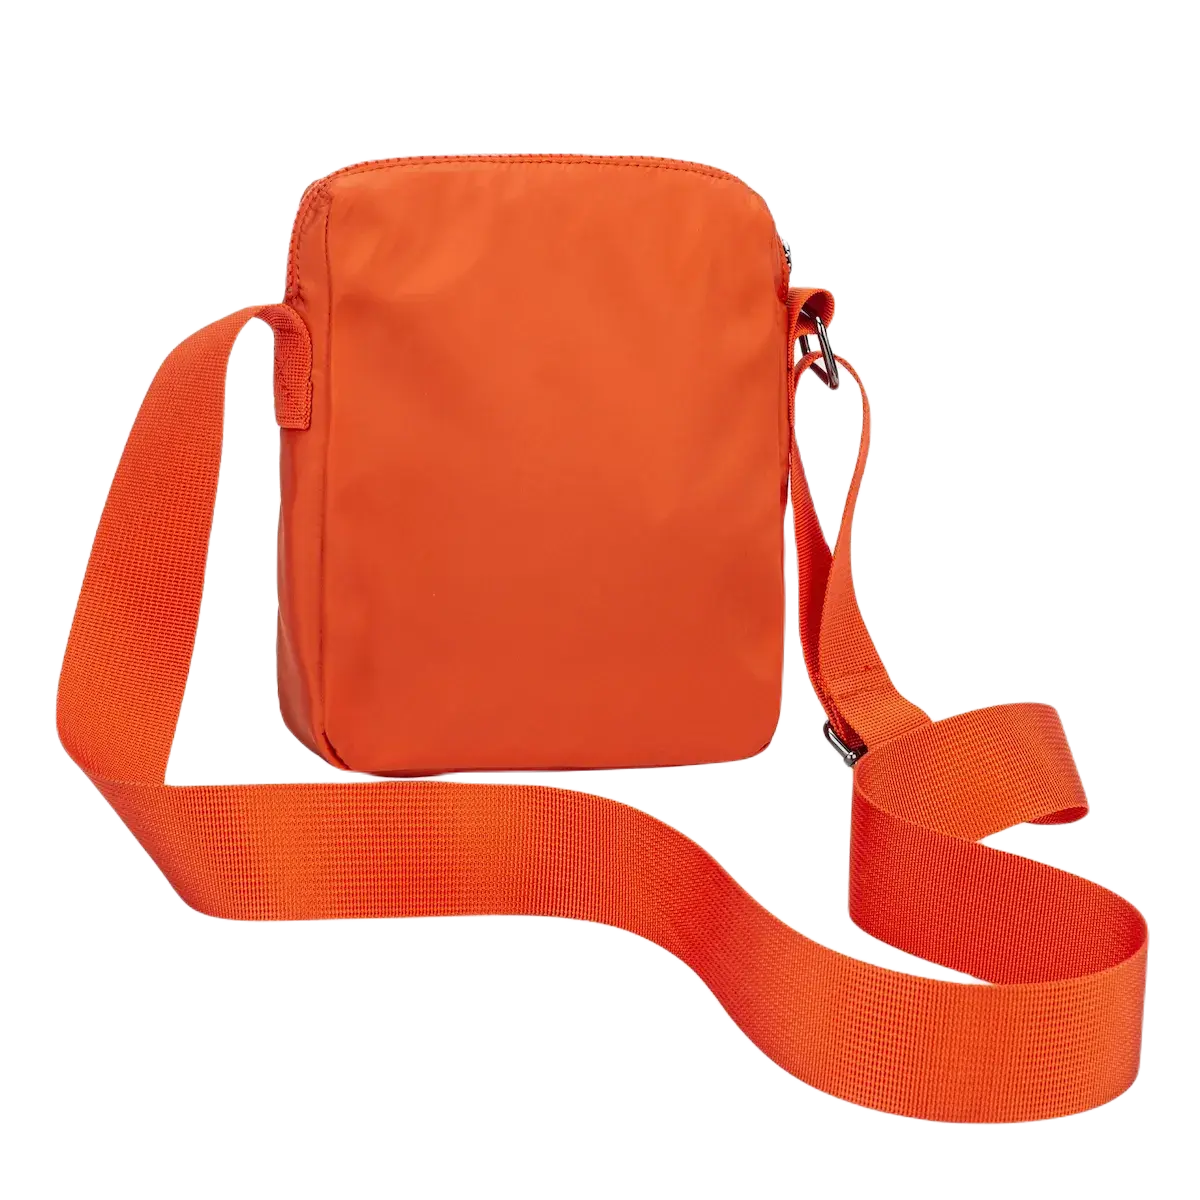 Arcus Phone Bag - Orange